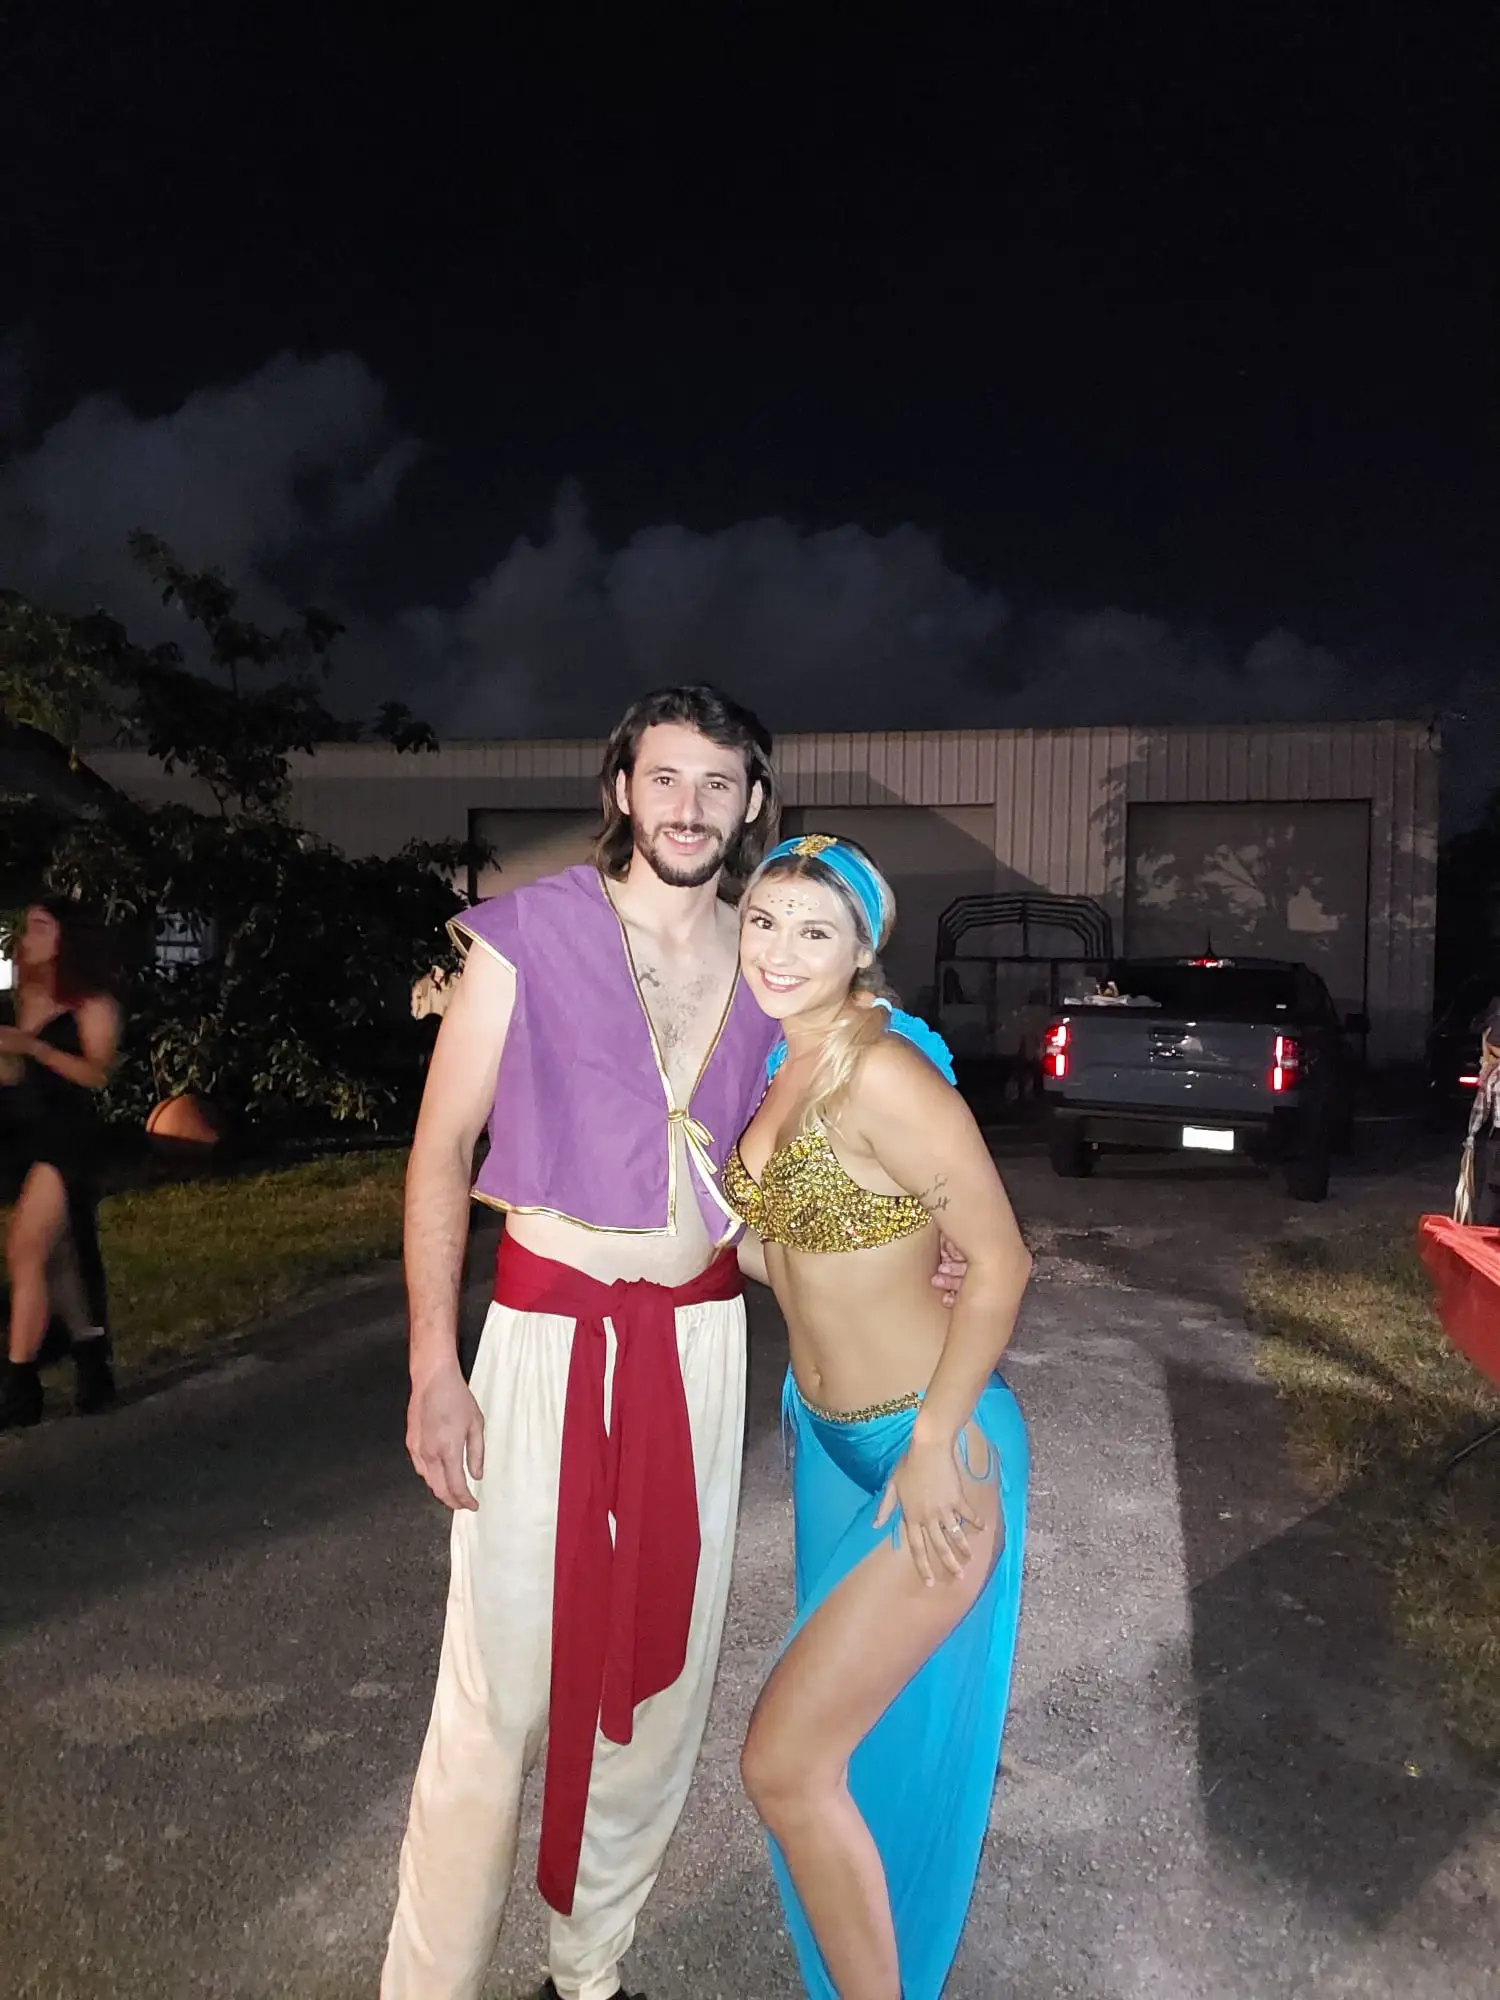 Princess Jasmine and Aladdin costume